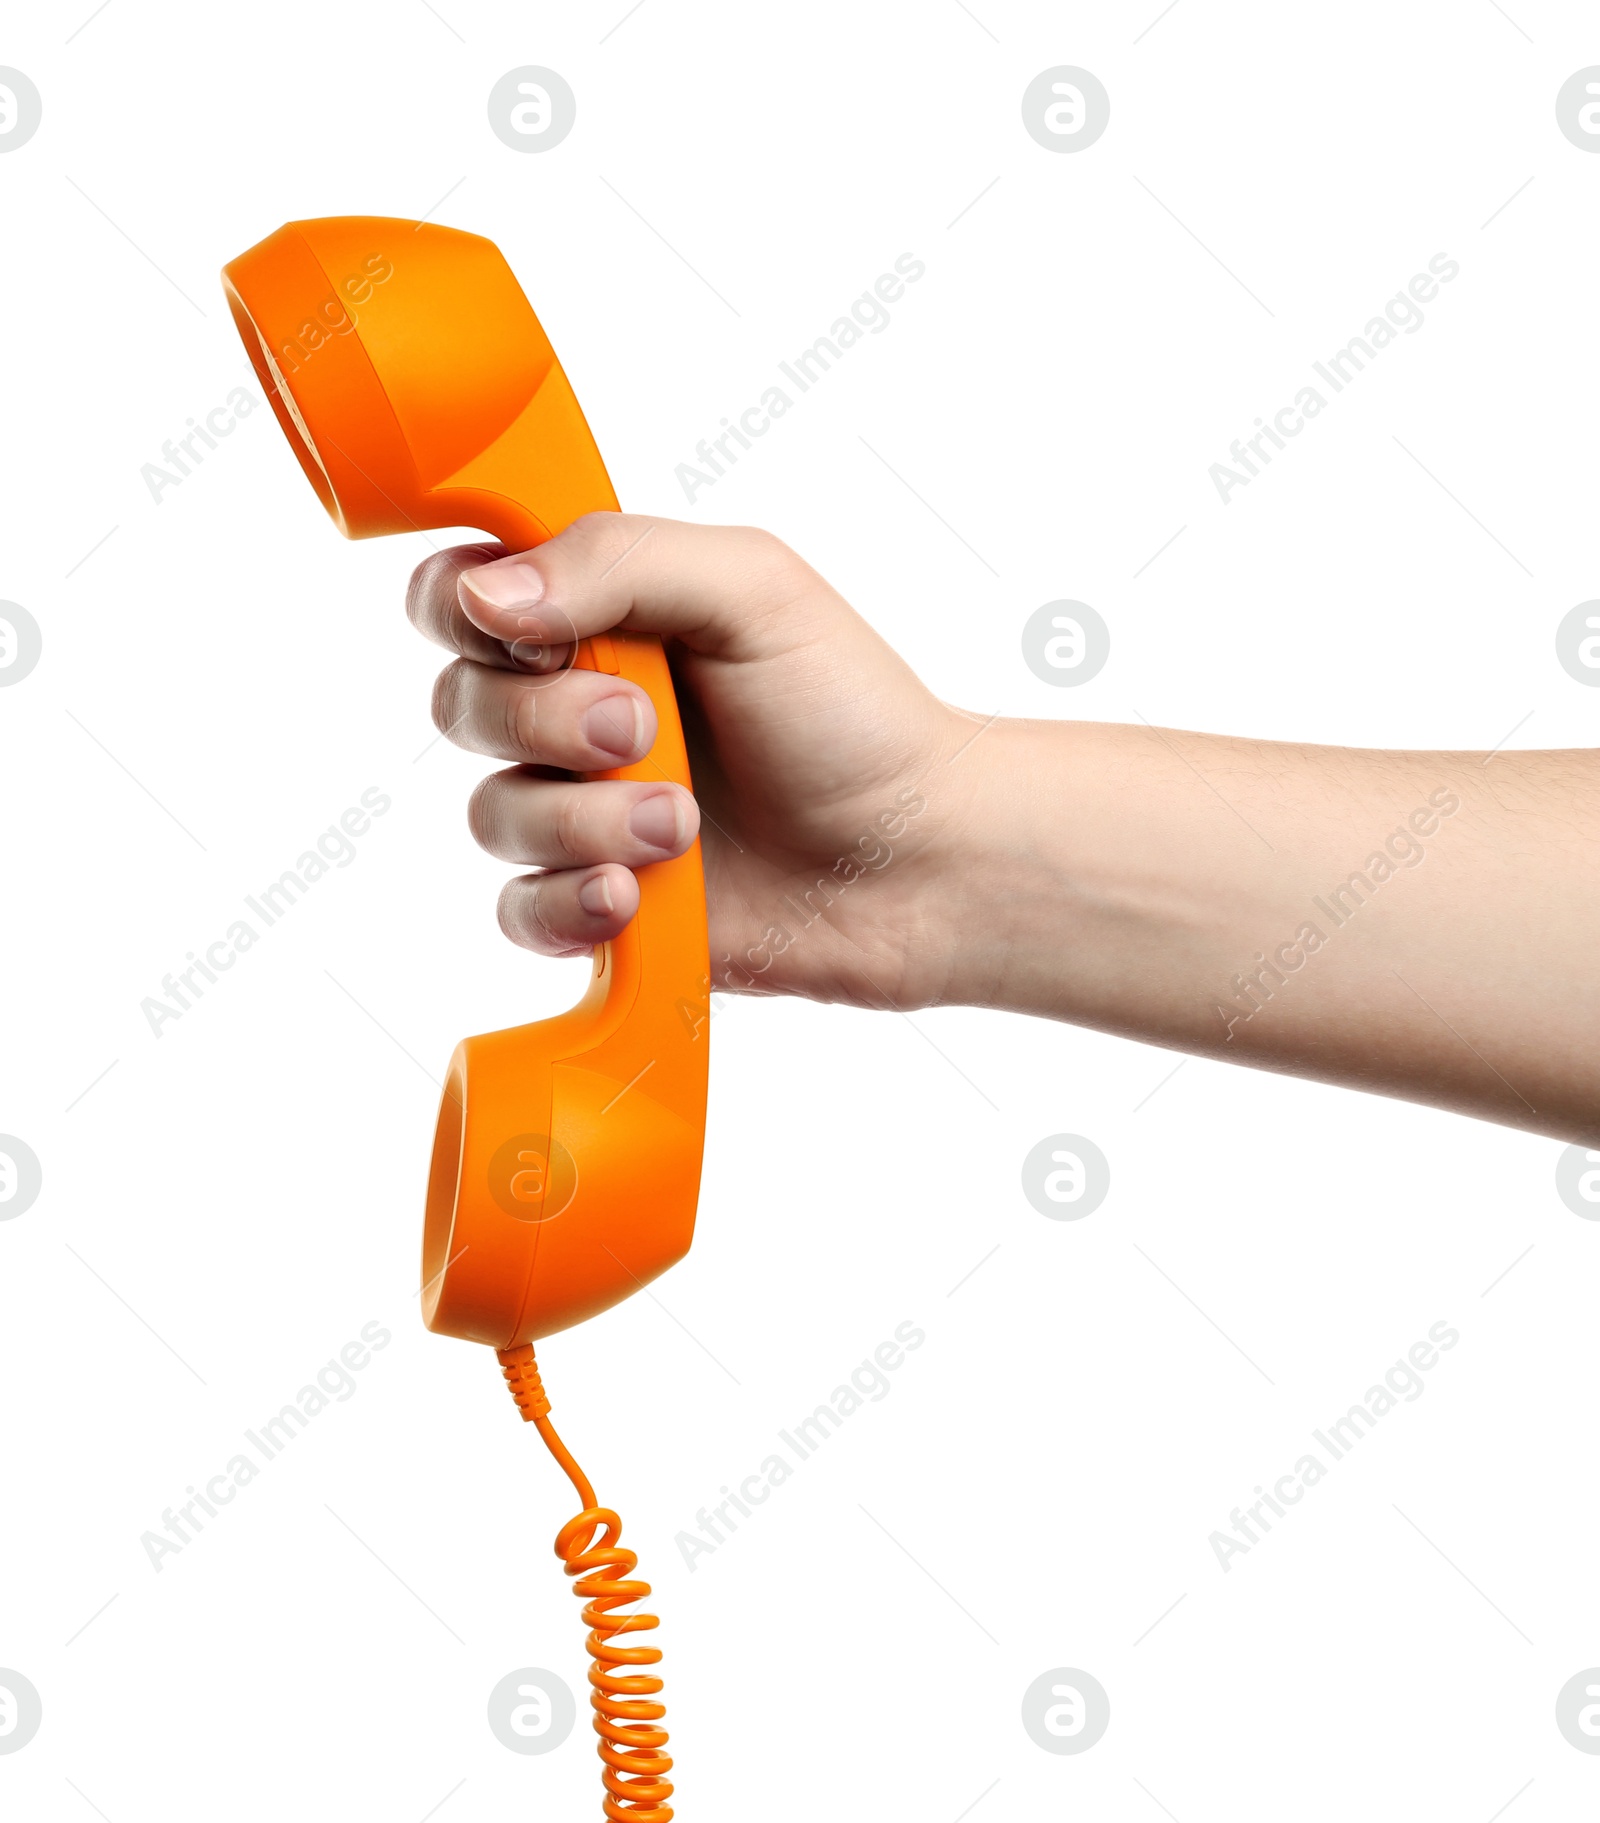 Image of Woman holding orange telephone handset on white background, closeup